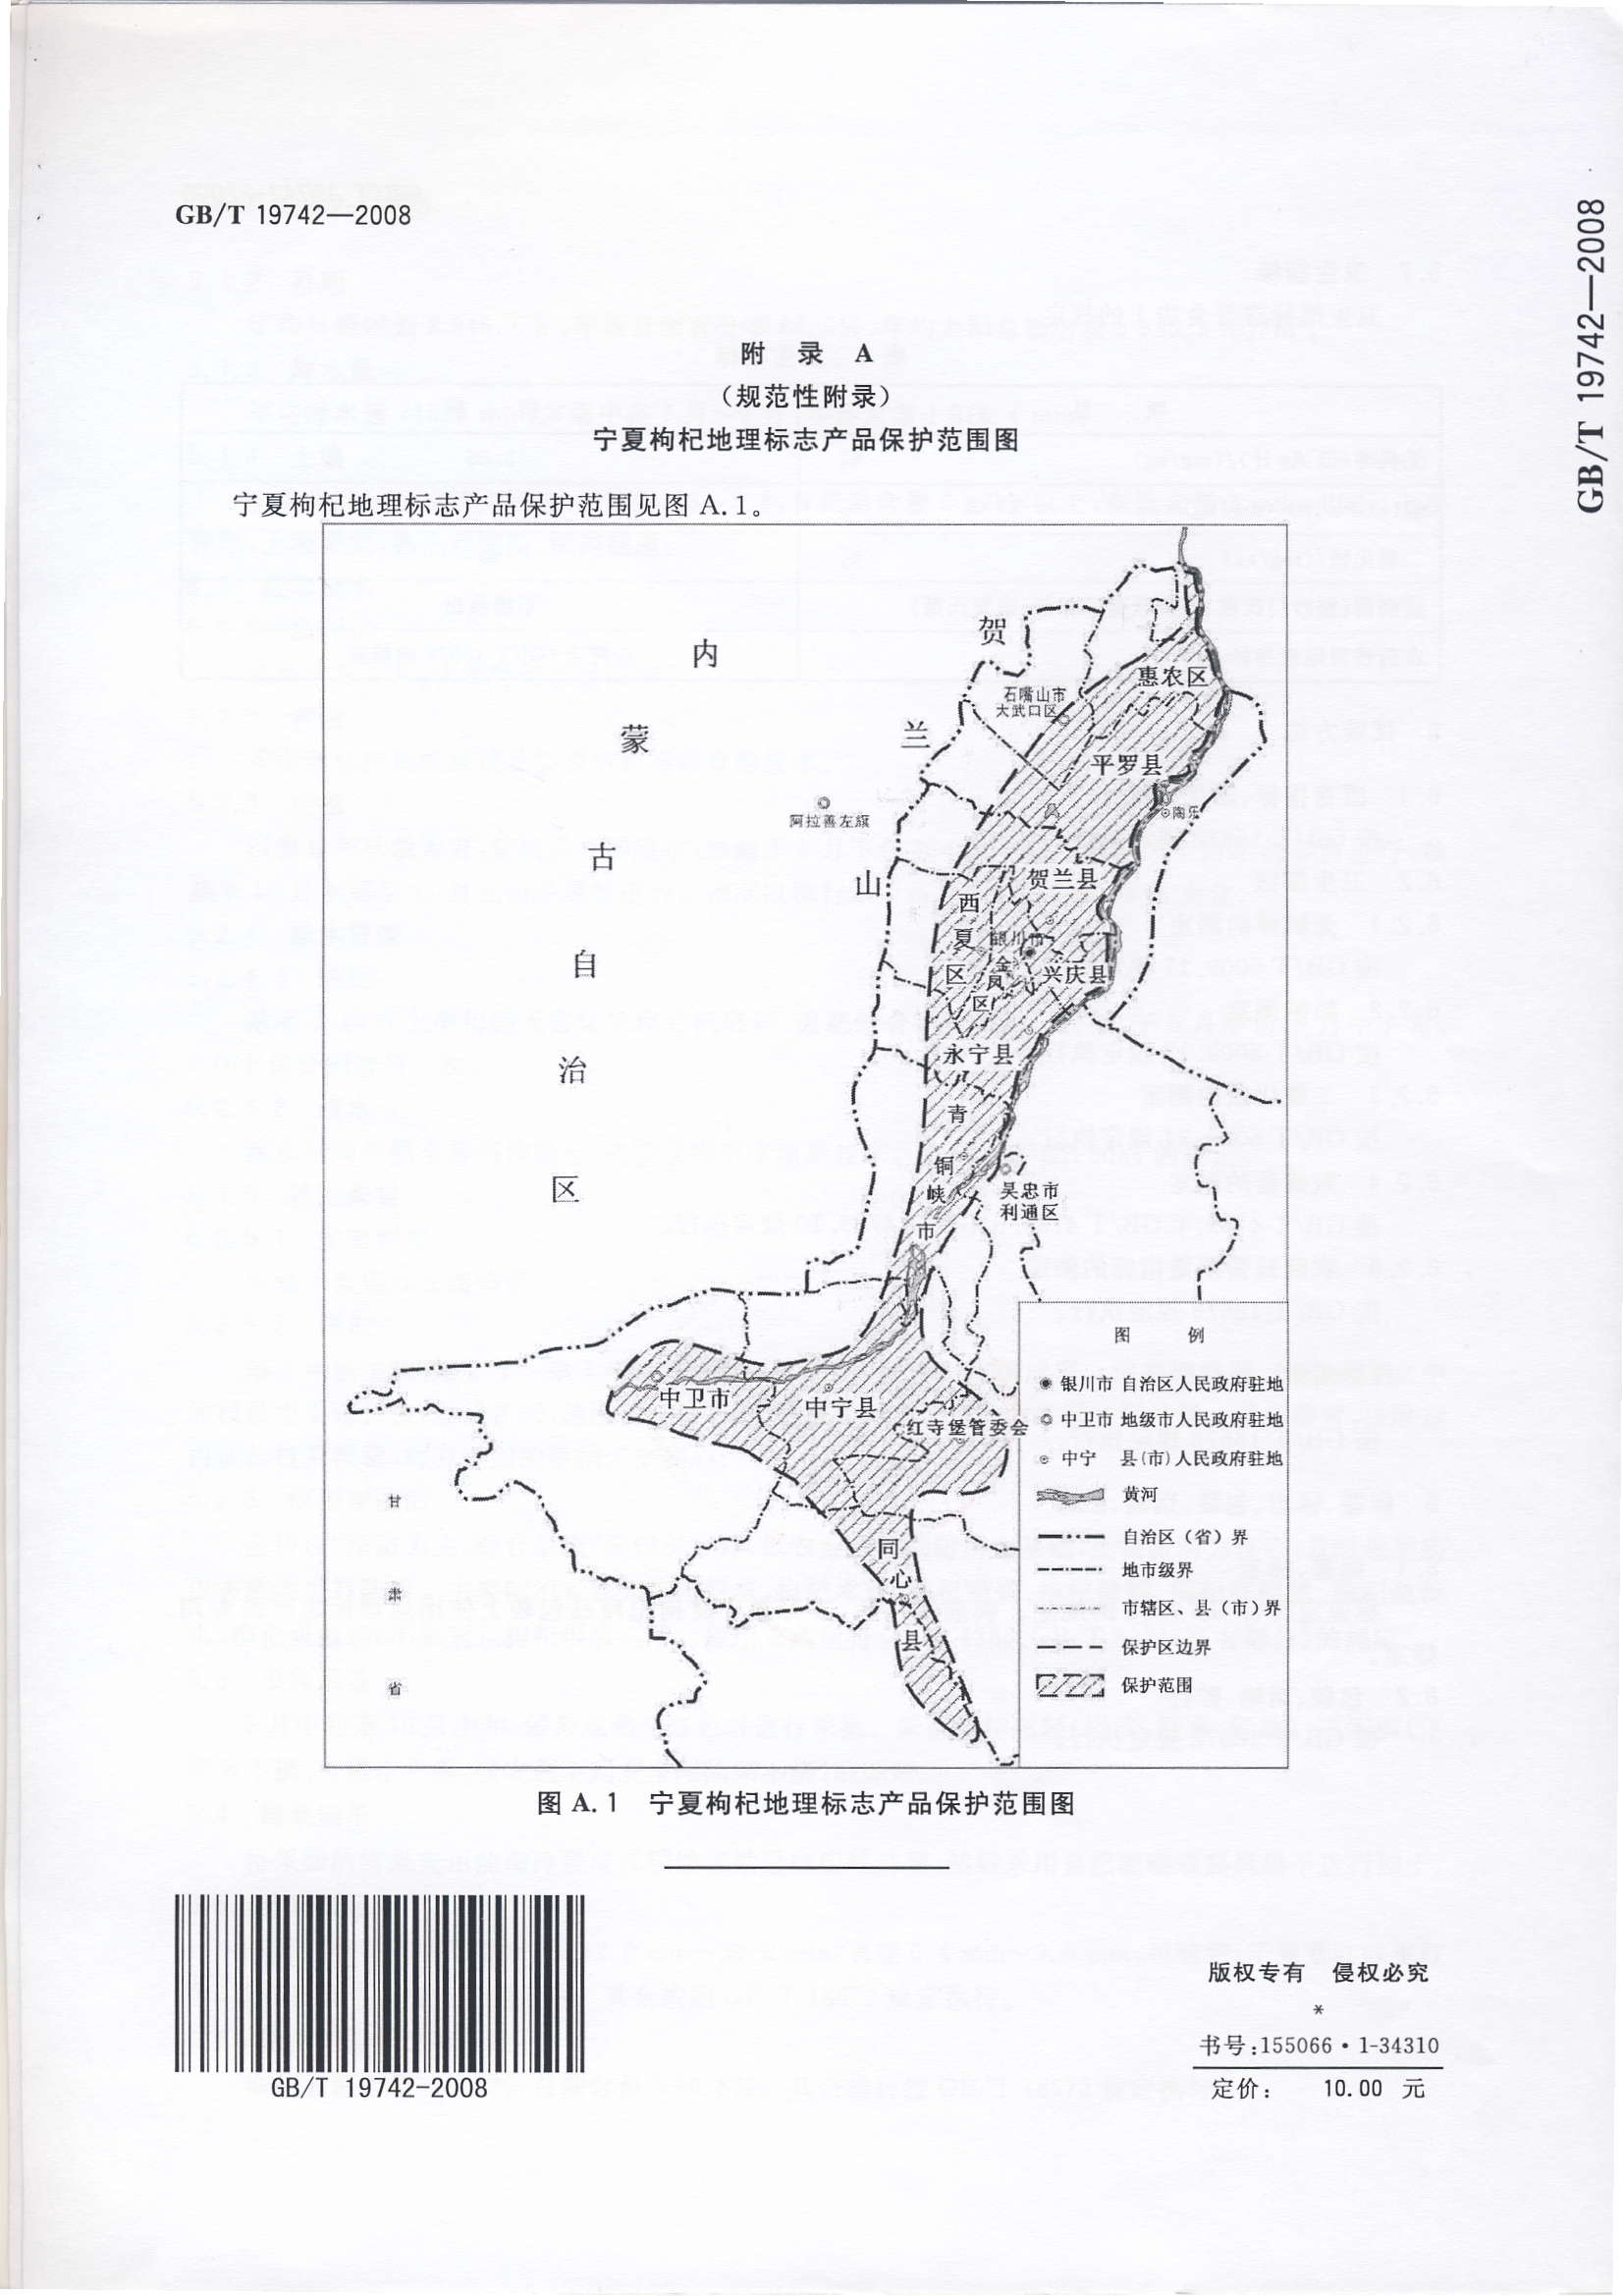 寧夏枸杞地理標誌產品保護範圍圖